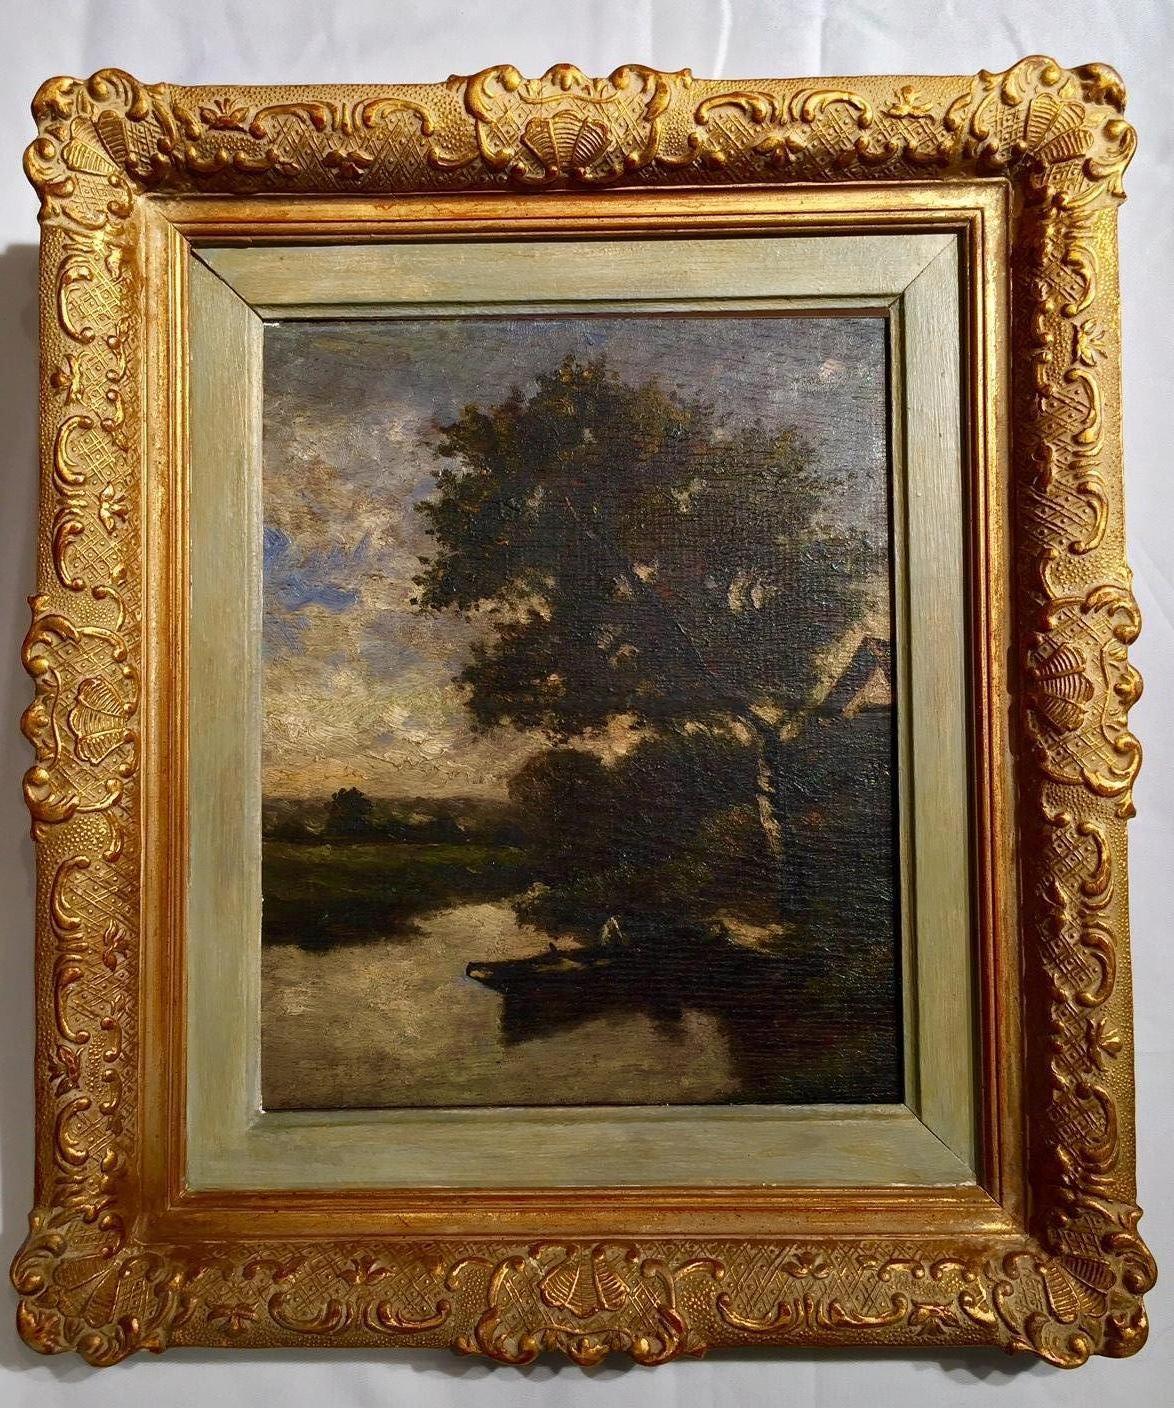 Peinture à l'huile sur bois attribuée à Jules Dupré (1811-1889), un artiste français célèbre pour ses peintures dramatiques des forêts des environs de Paris et l'un des chefs de file de l'école de Barbizon des peintres paysagistes. Des couleurs